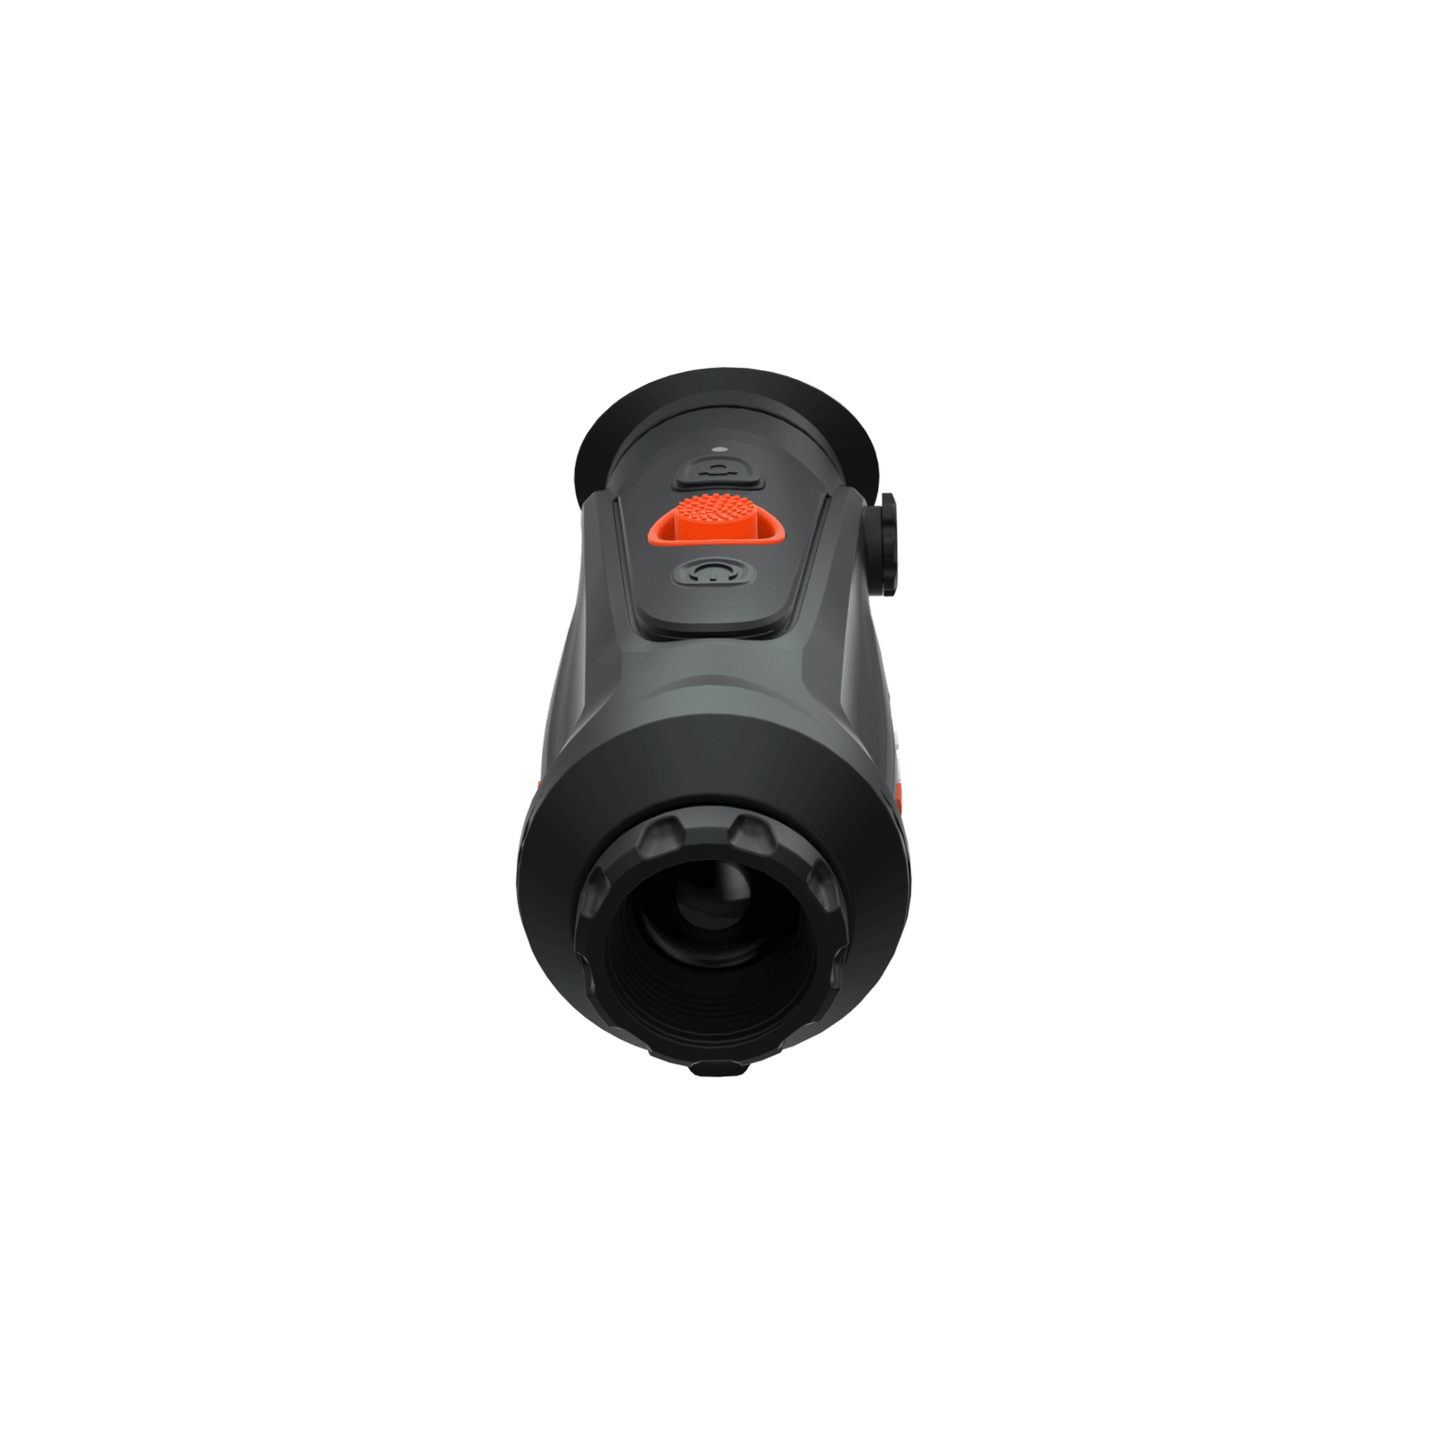 Cyclops 325 Pro handhållen termisk kikare